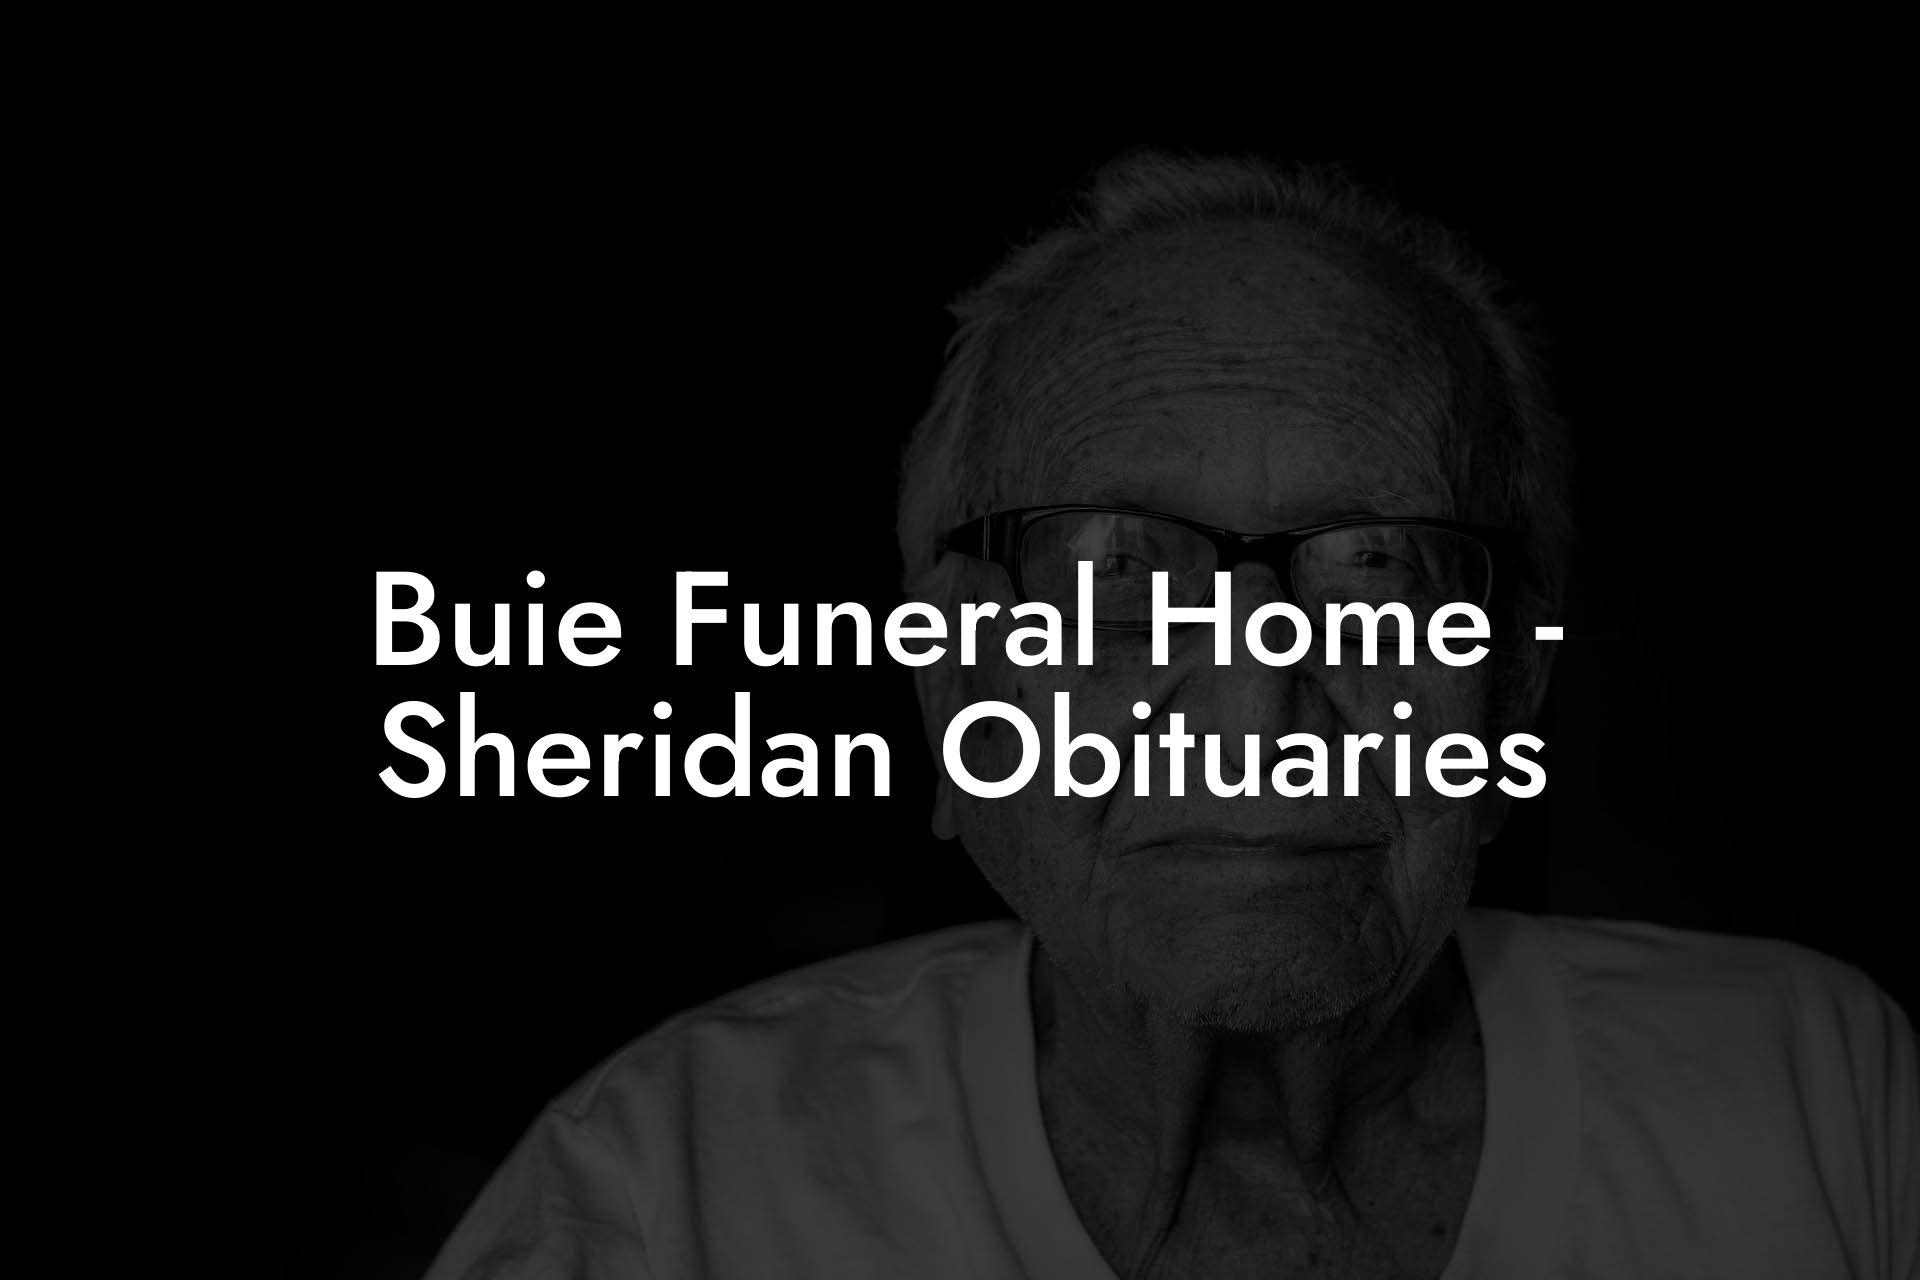 Buie Funeral Home - Sheridan Obituaries